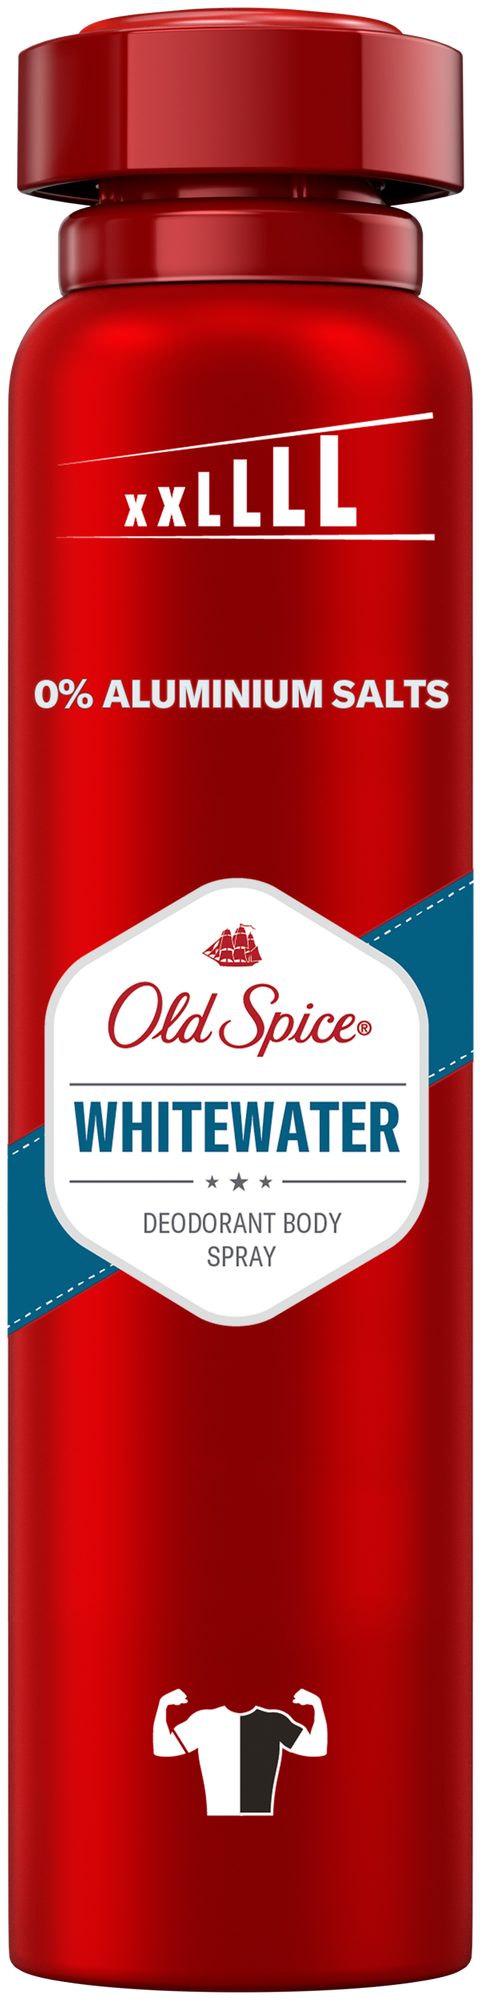 Дезодорант-антиперспирант Old Spice White Water 250мл - фото №12